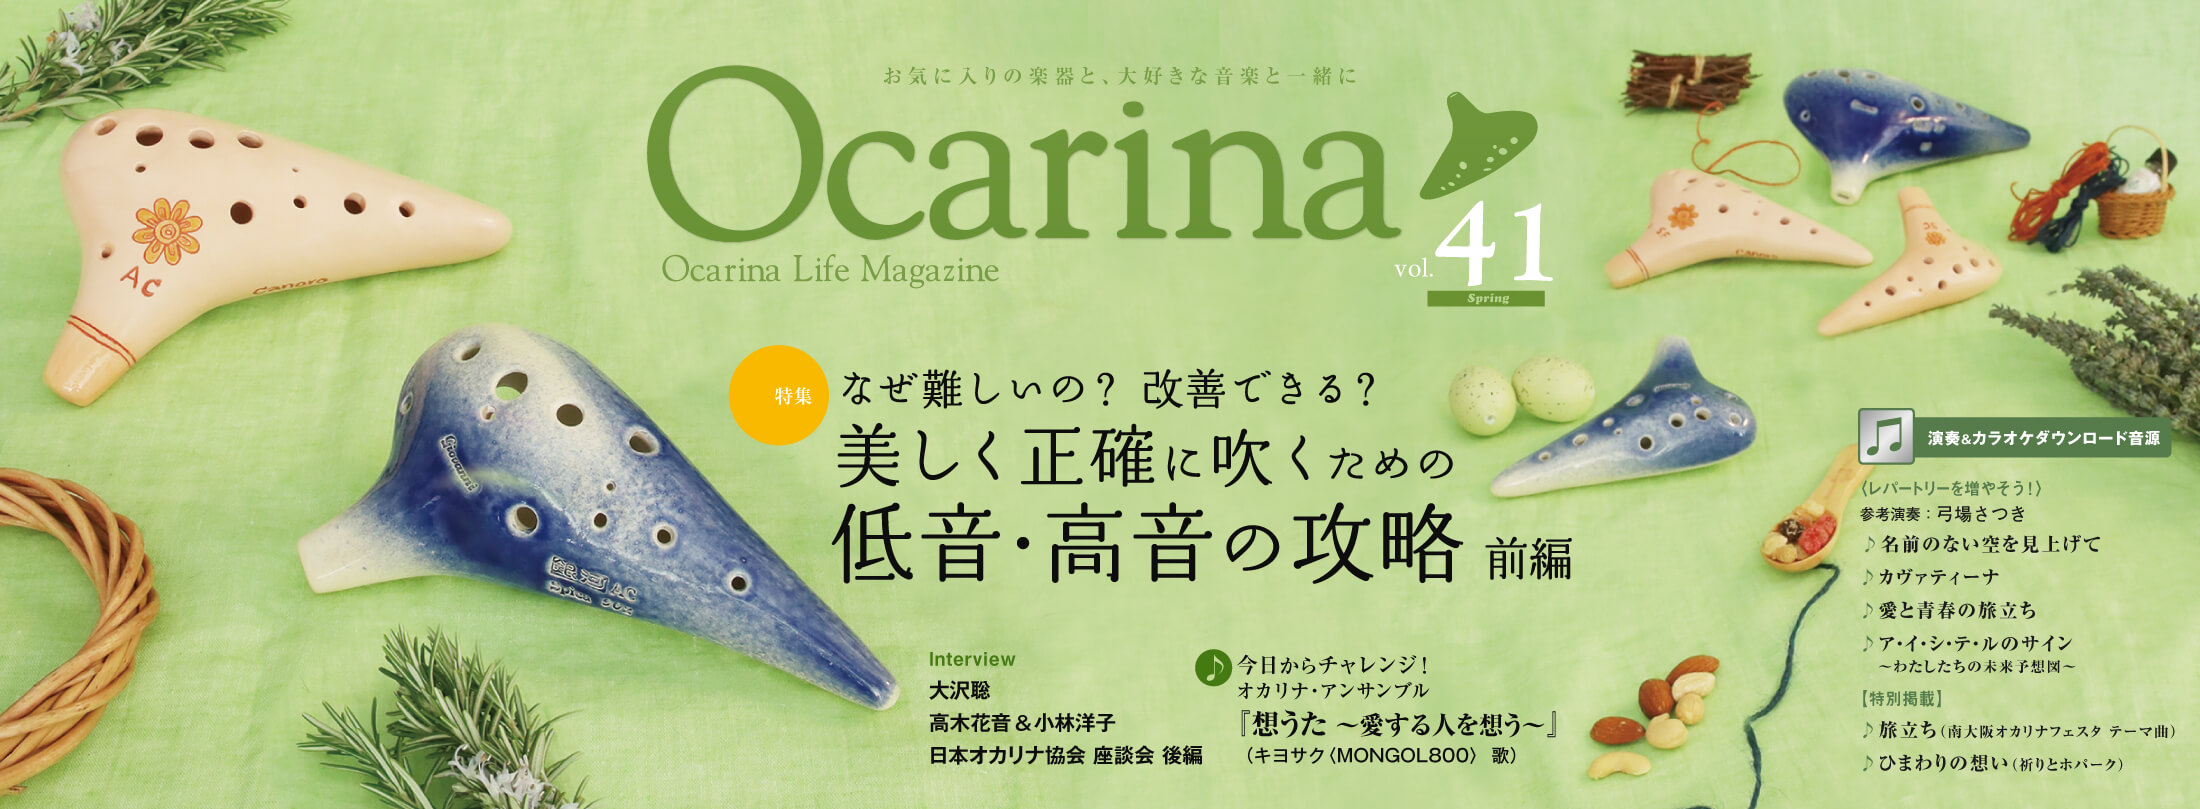 Ocarina41